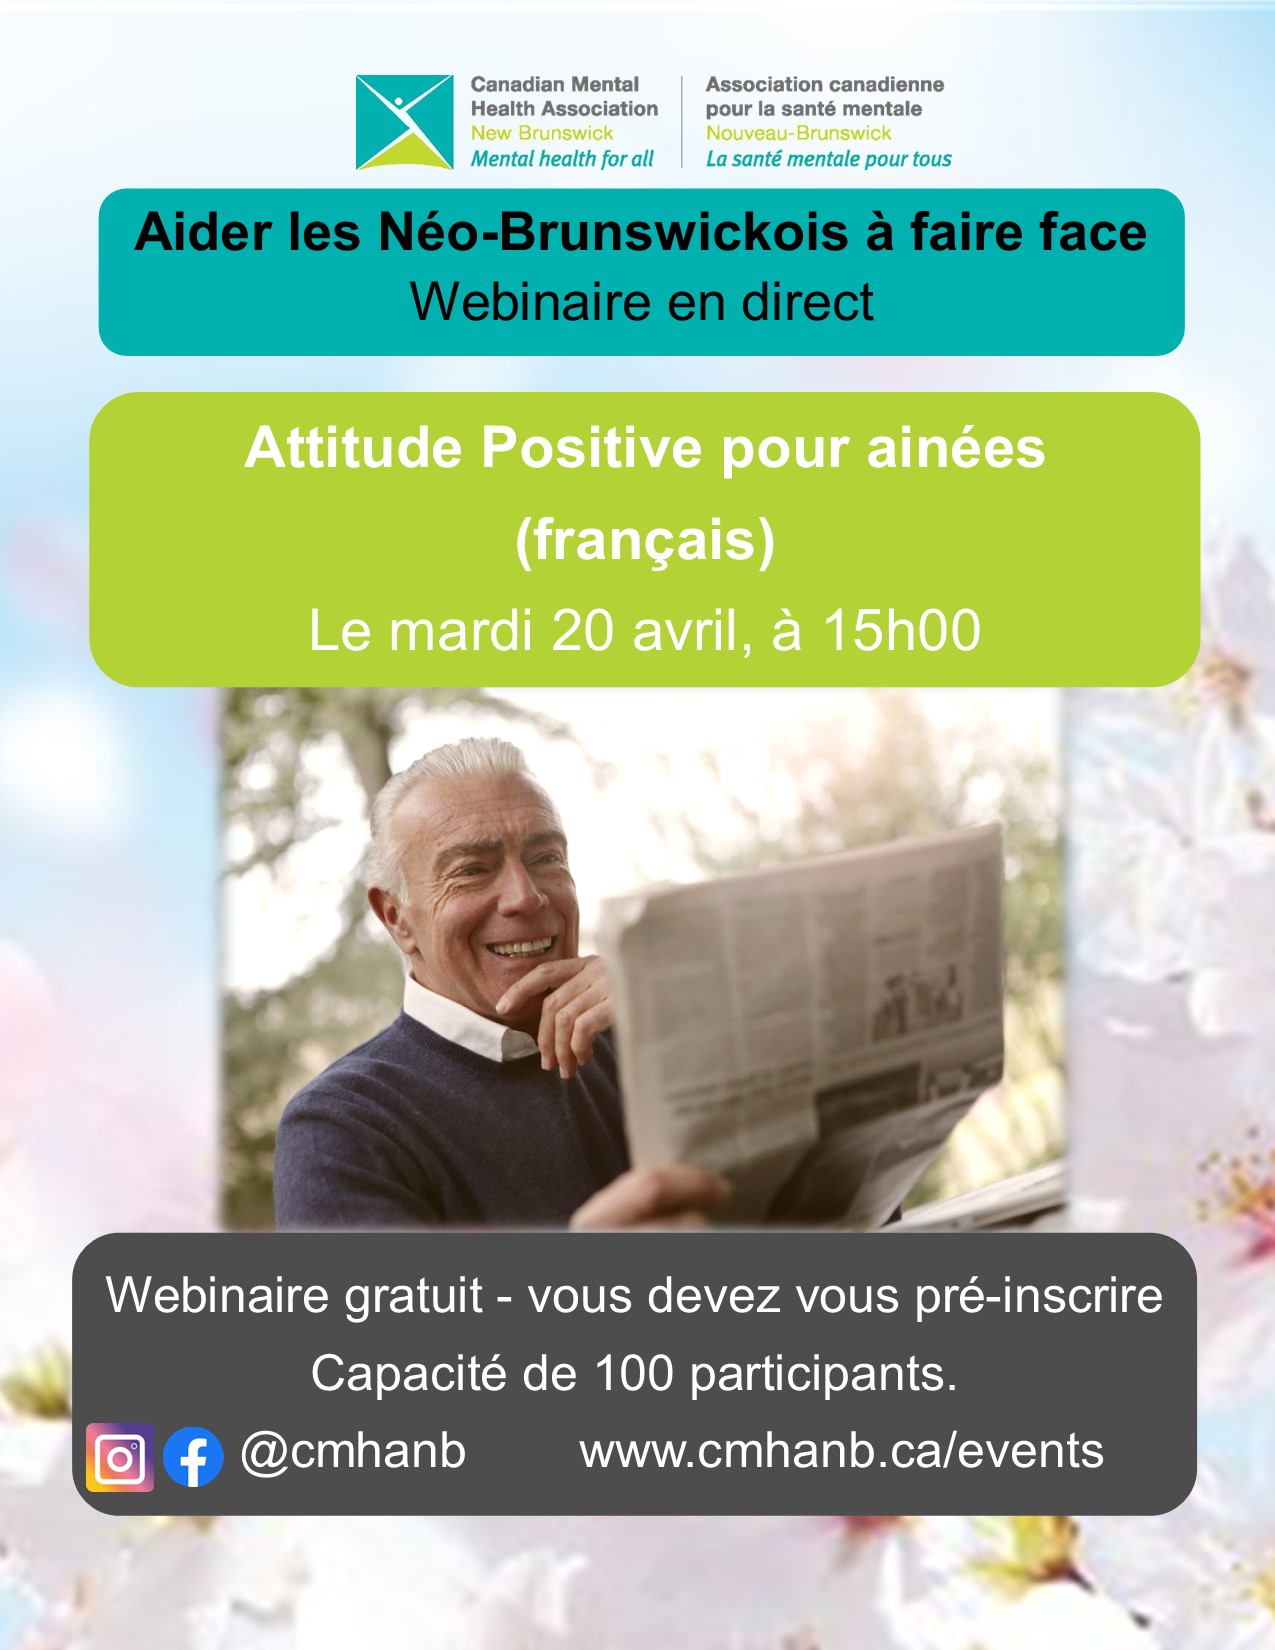 Attitude positive pour ainées (français)